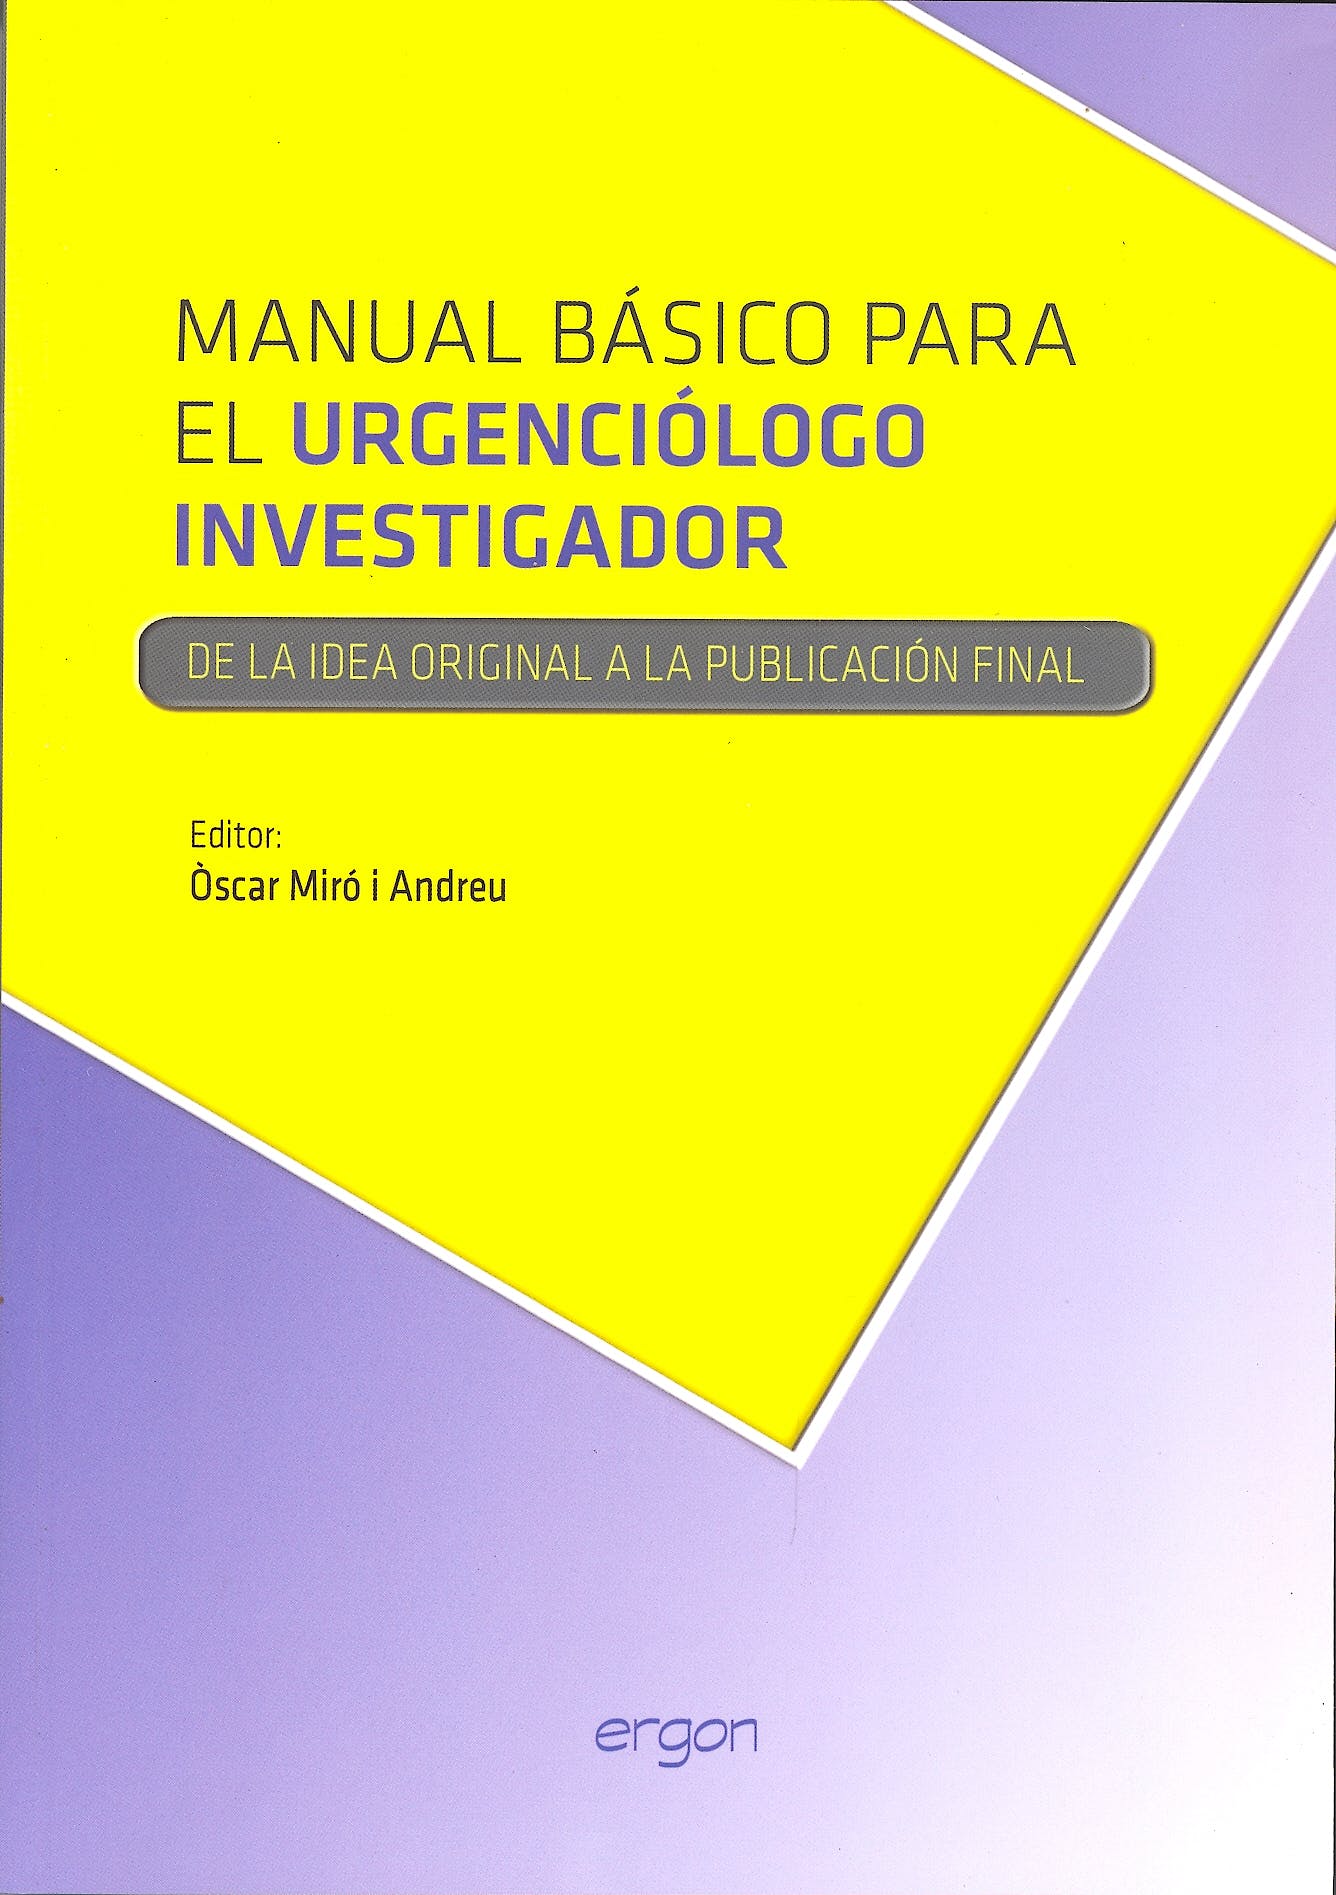 Manual Básico para el urgenciólogo investigador